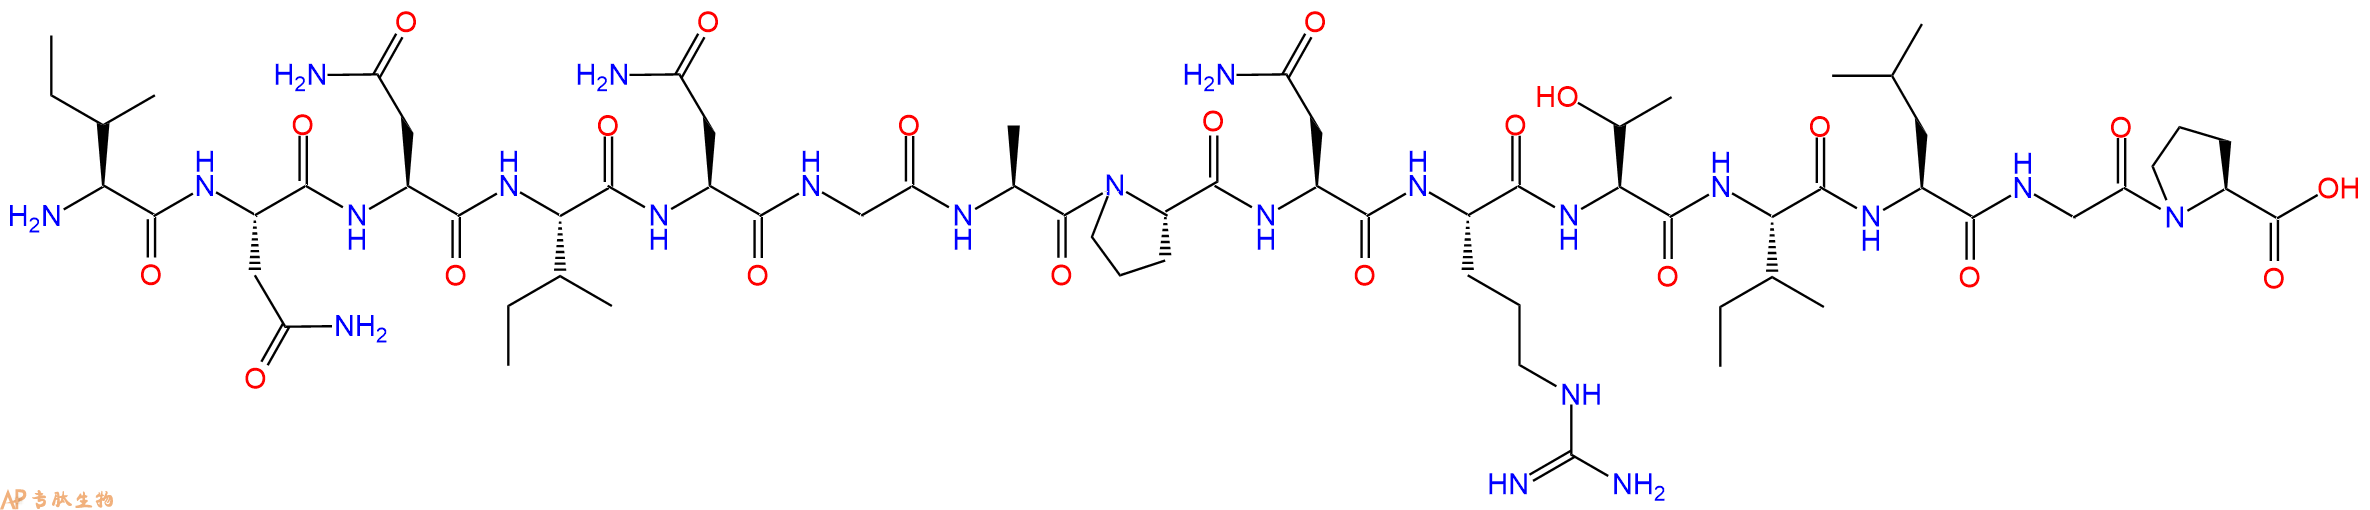 多肽INNINGAPNRTILGP的参数和合成路线|三字母为Ile-Asn-Asn-Ile-Asn-